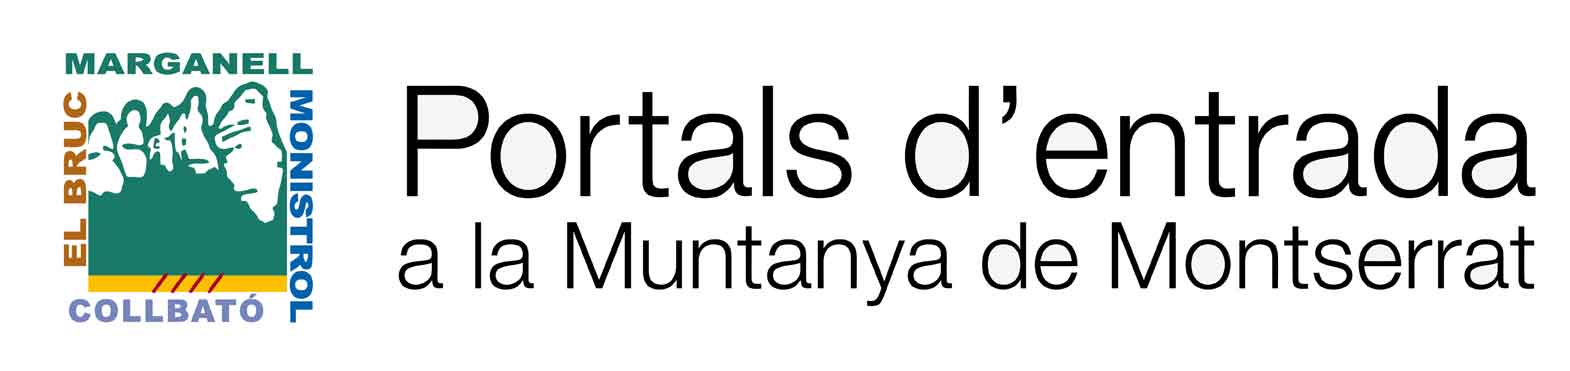 심벌 마크 Portals d'entrada de a la Muntanya de Montserrat